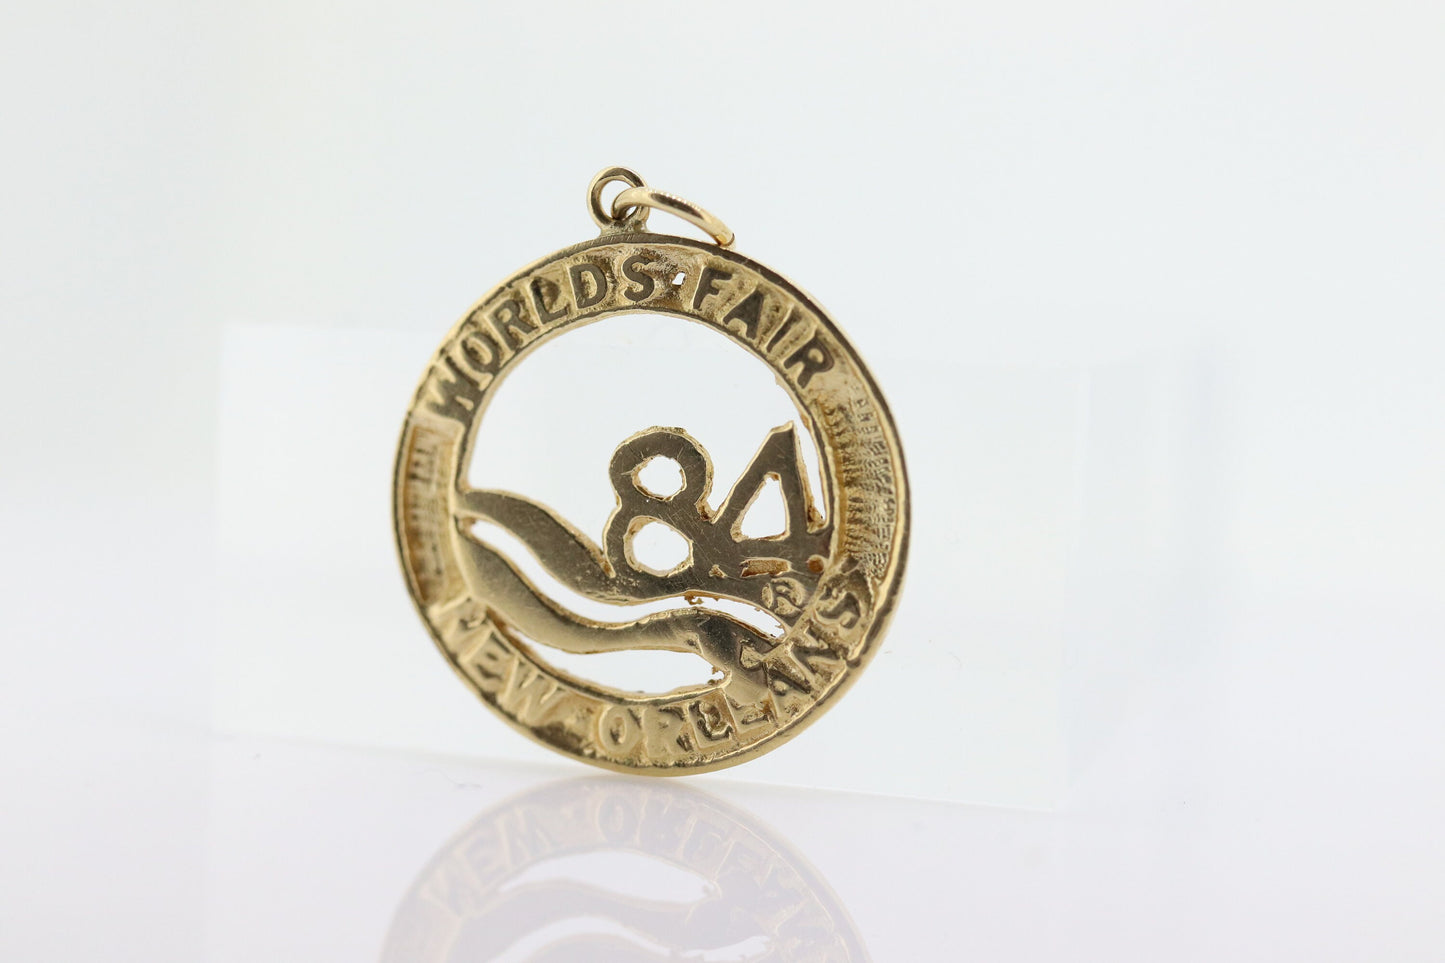 14k World FAIR 1984 New Orleans Medallion Pendant. 1984 New Orleans World Fair Commemorative Pendant. sst(90)